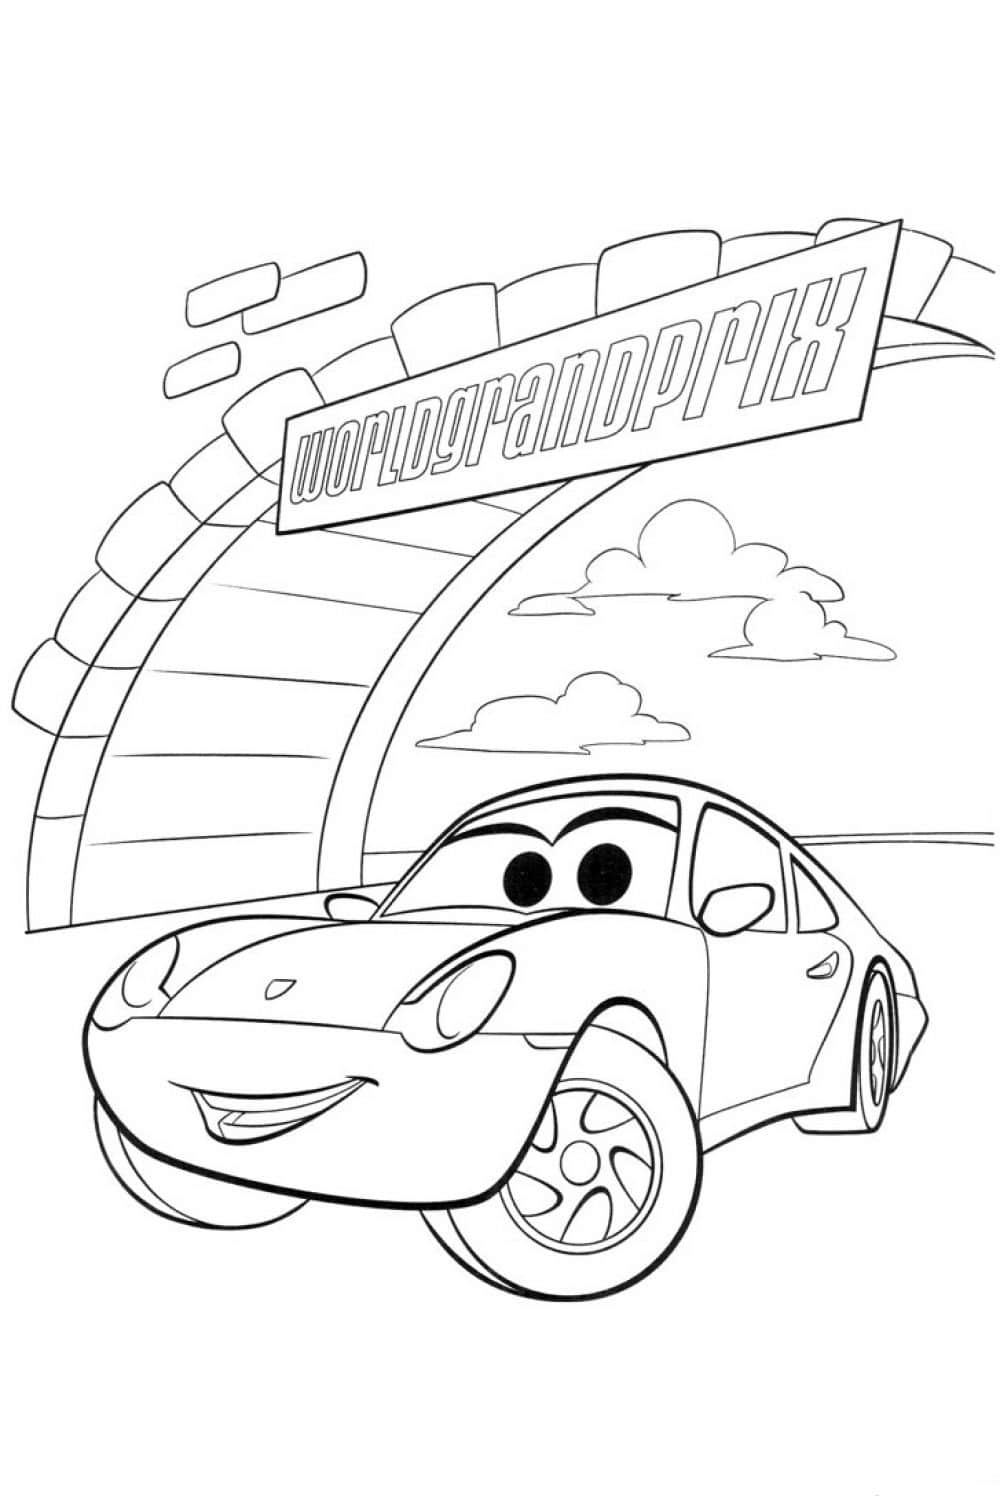 דף צביעה ציור לצביעה של מכונית מהירה מהסרט מכוניות